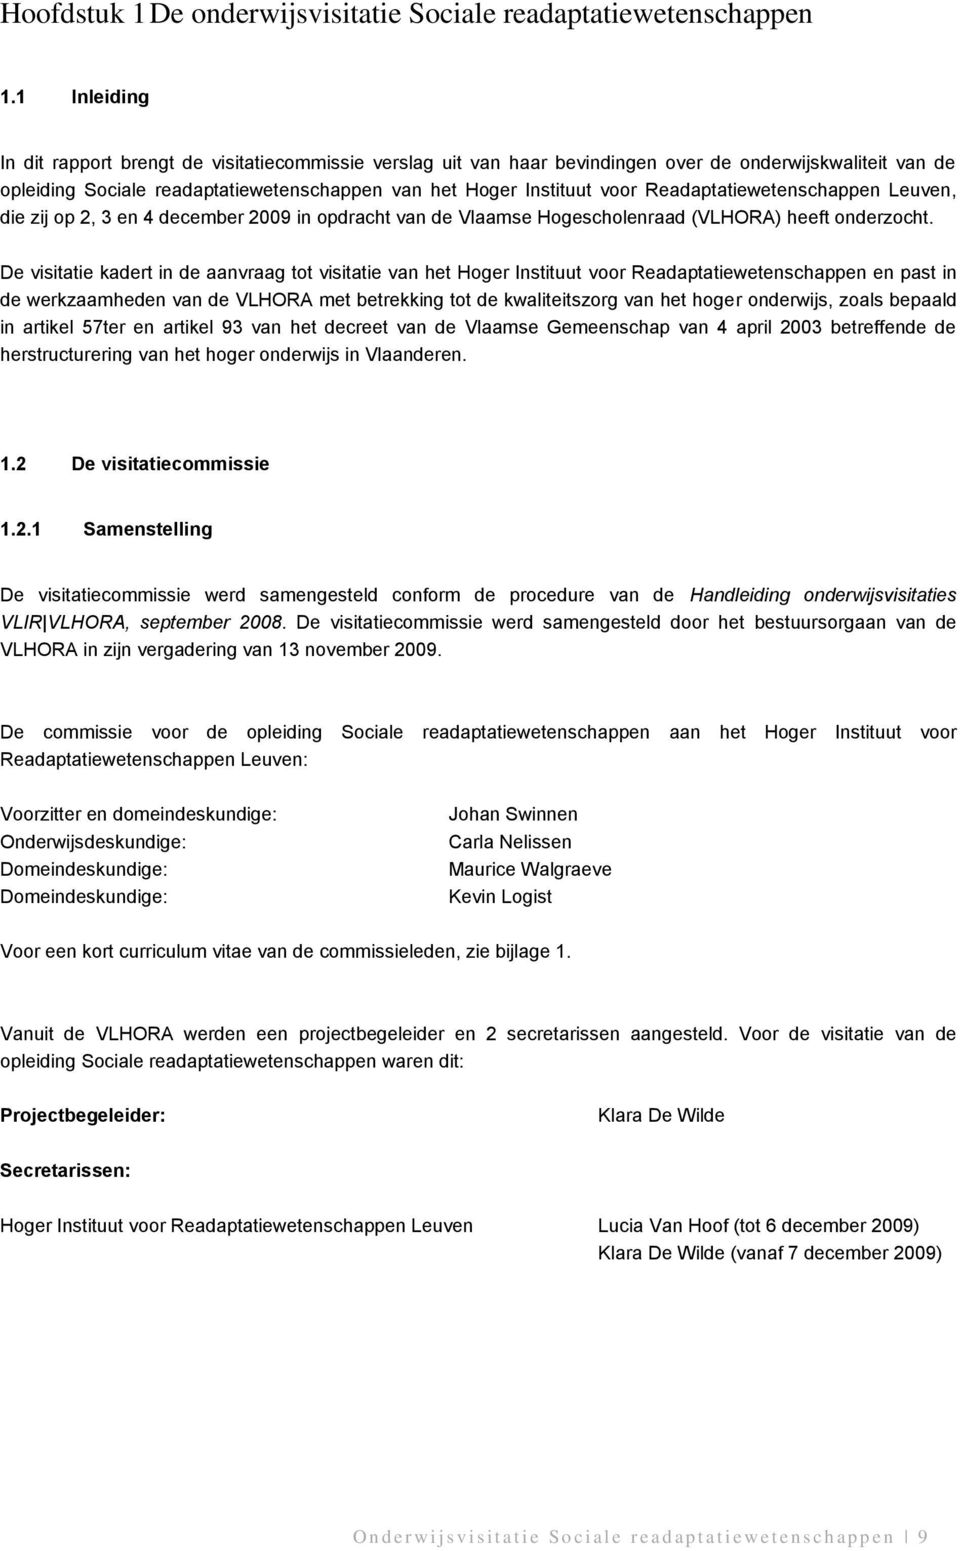 Readaptatiewetenschappen Leuven, die zij op 2, 3 en 4 december 2009 in opdracht van de Vlaamse Hogescholenraad (VLHORA) heeft onderzocht.